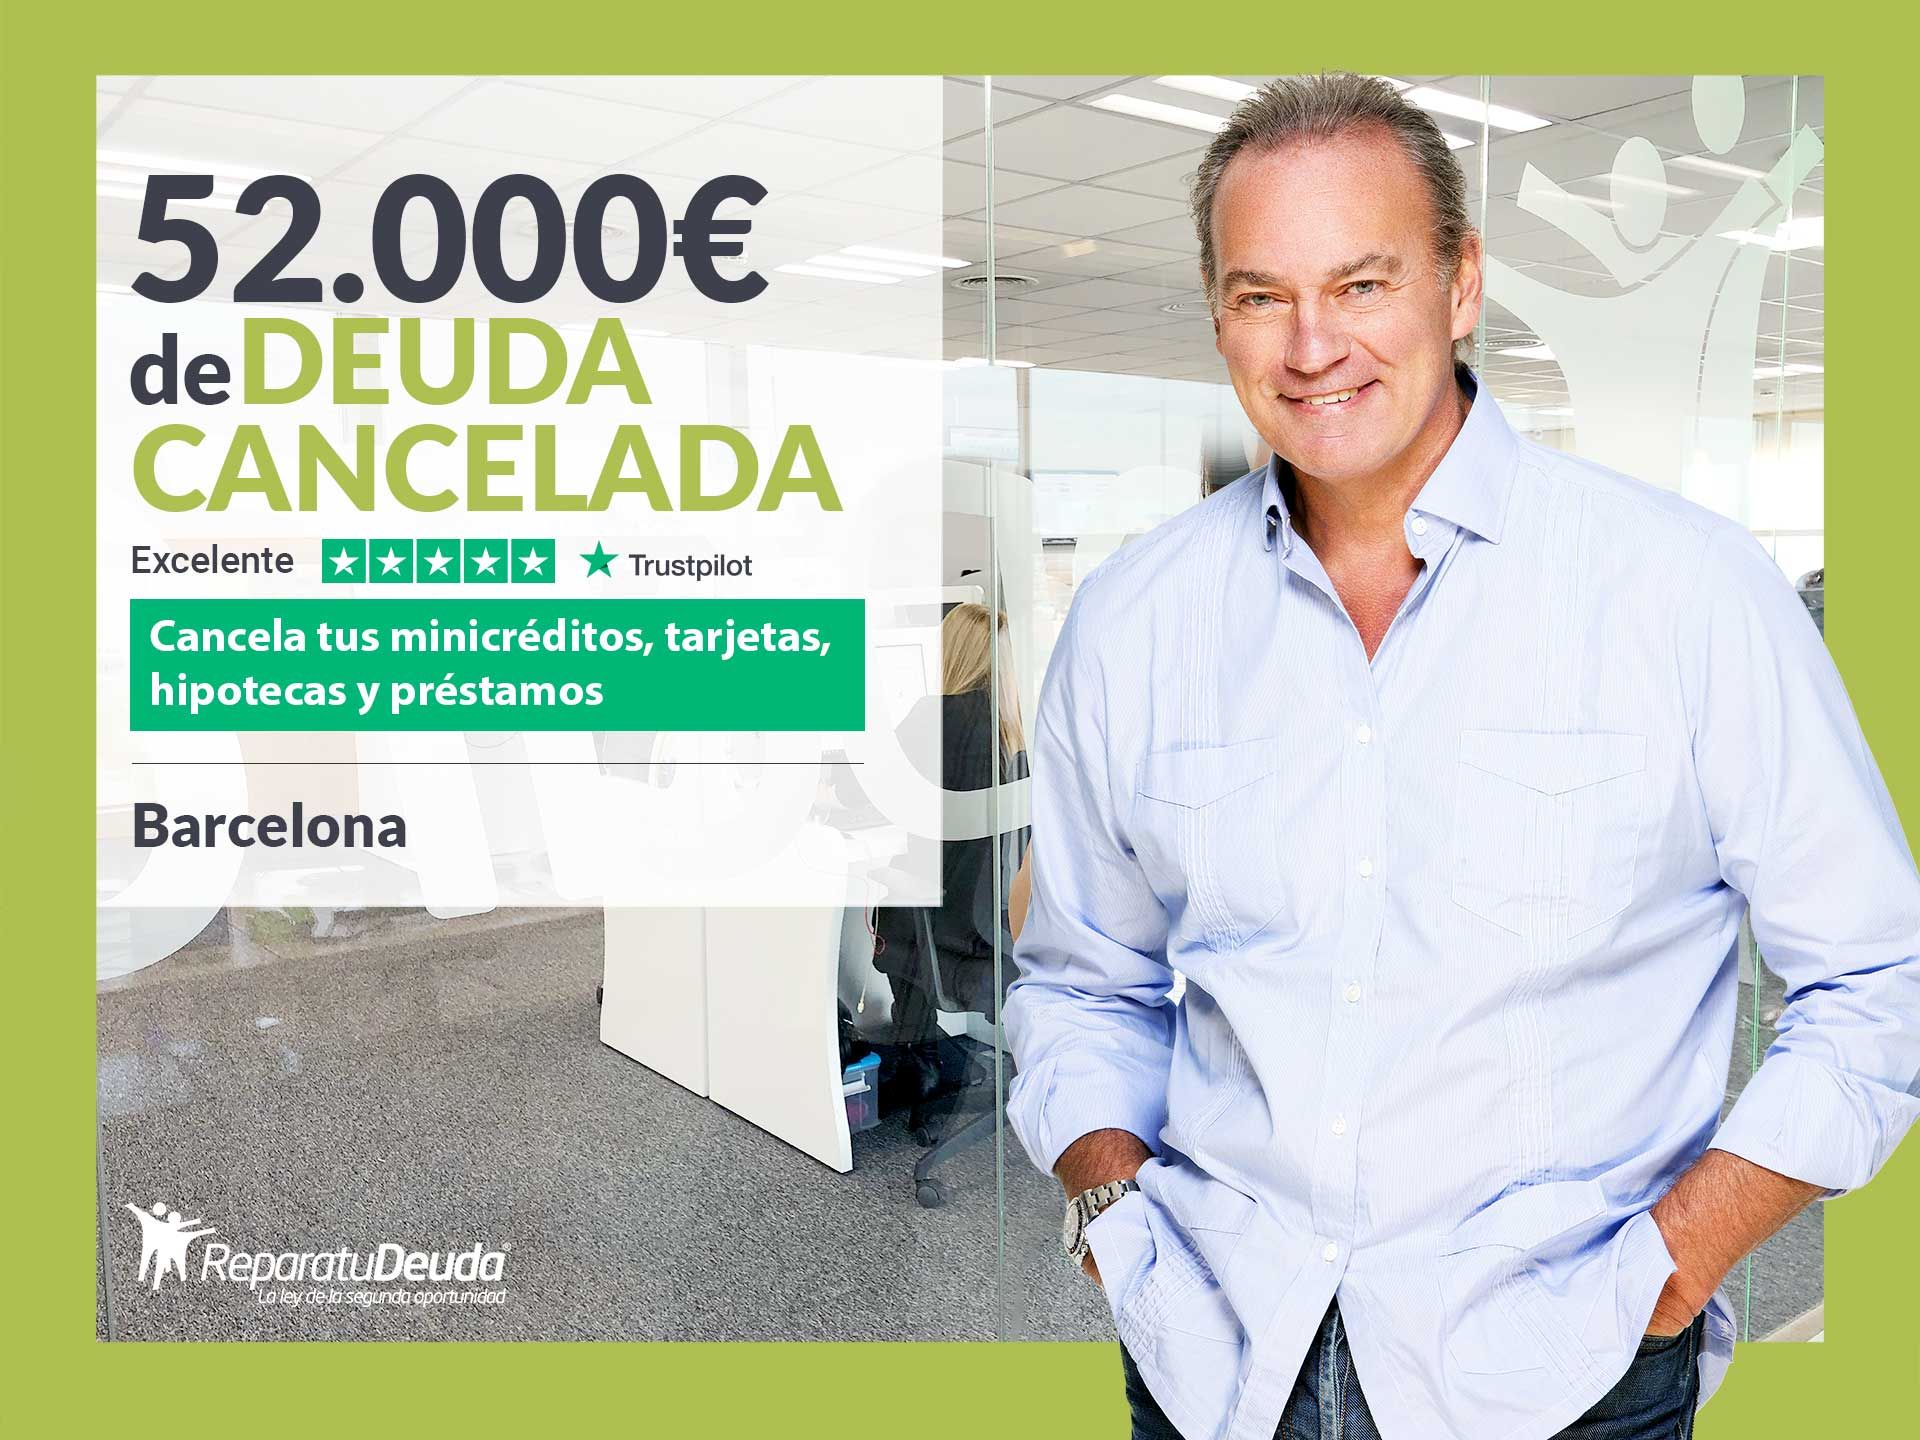 Repara tu Deuda Abogados cancela 52.000? en Barcelona (Catalunya) con la Ley de Segunda Oportunidad